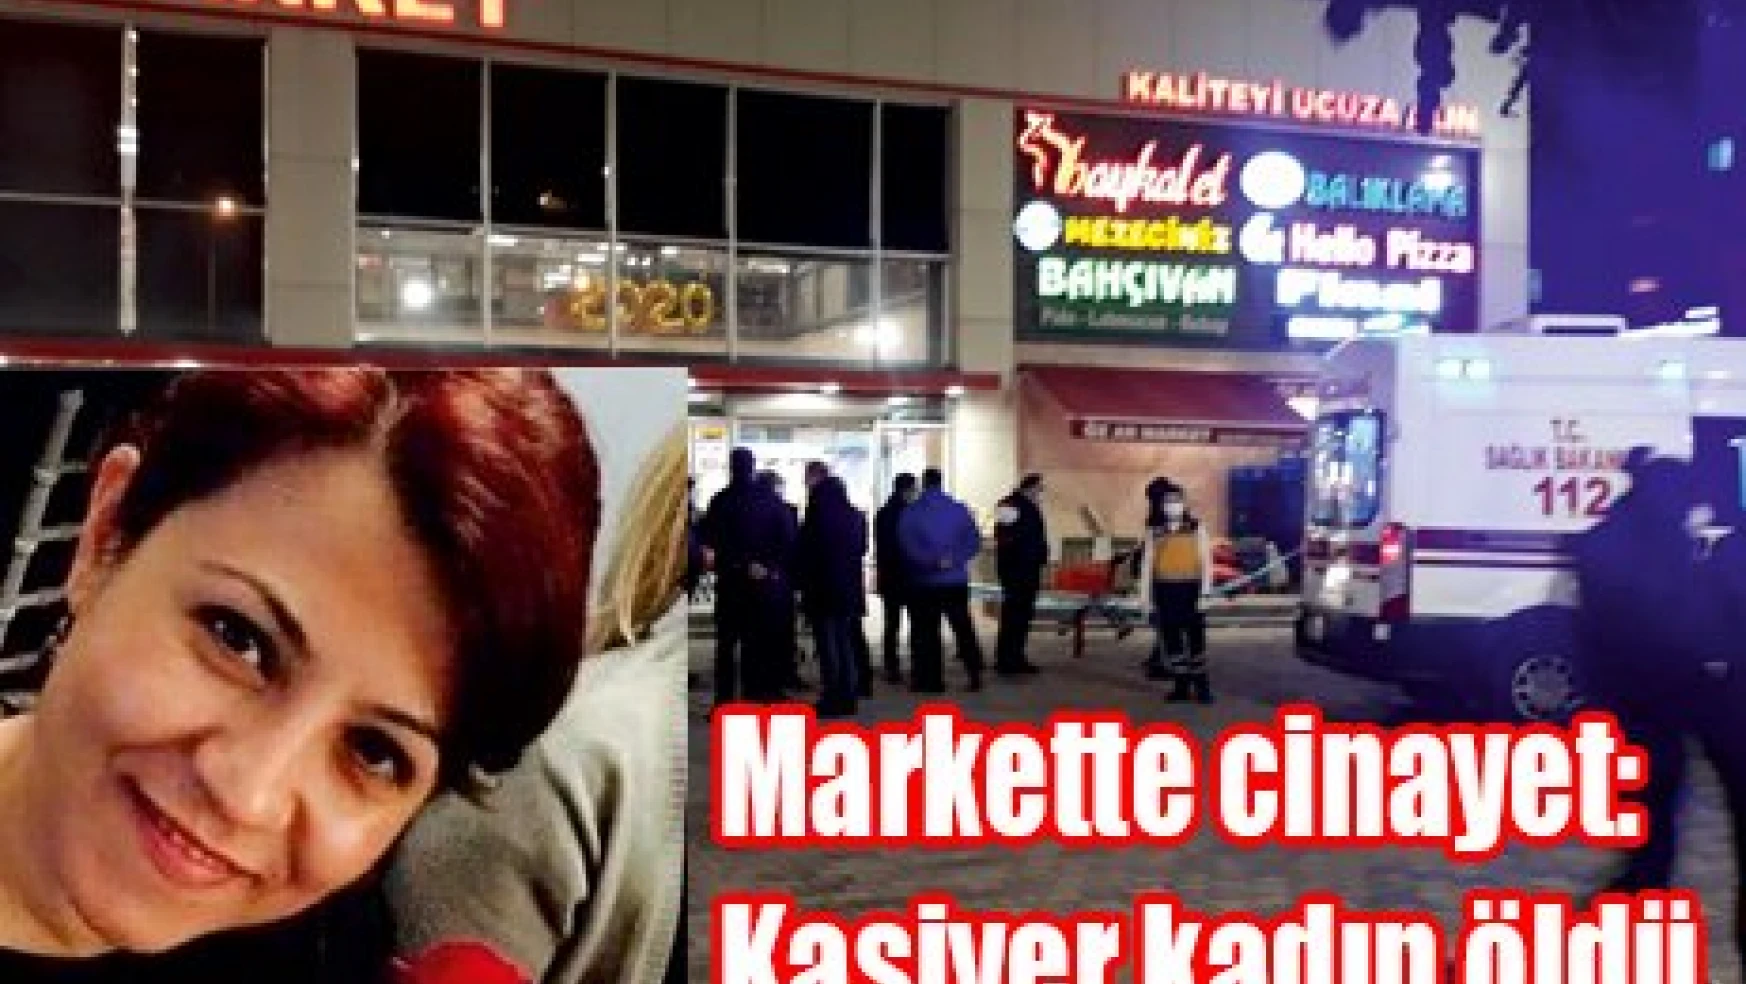 Markette cinayet: Kasiyer kadın öldü